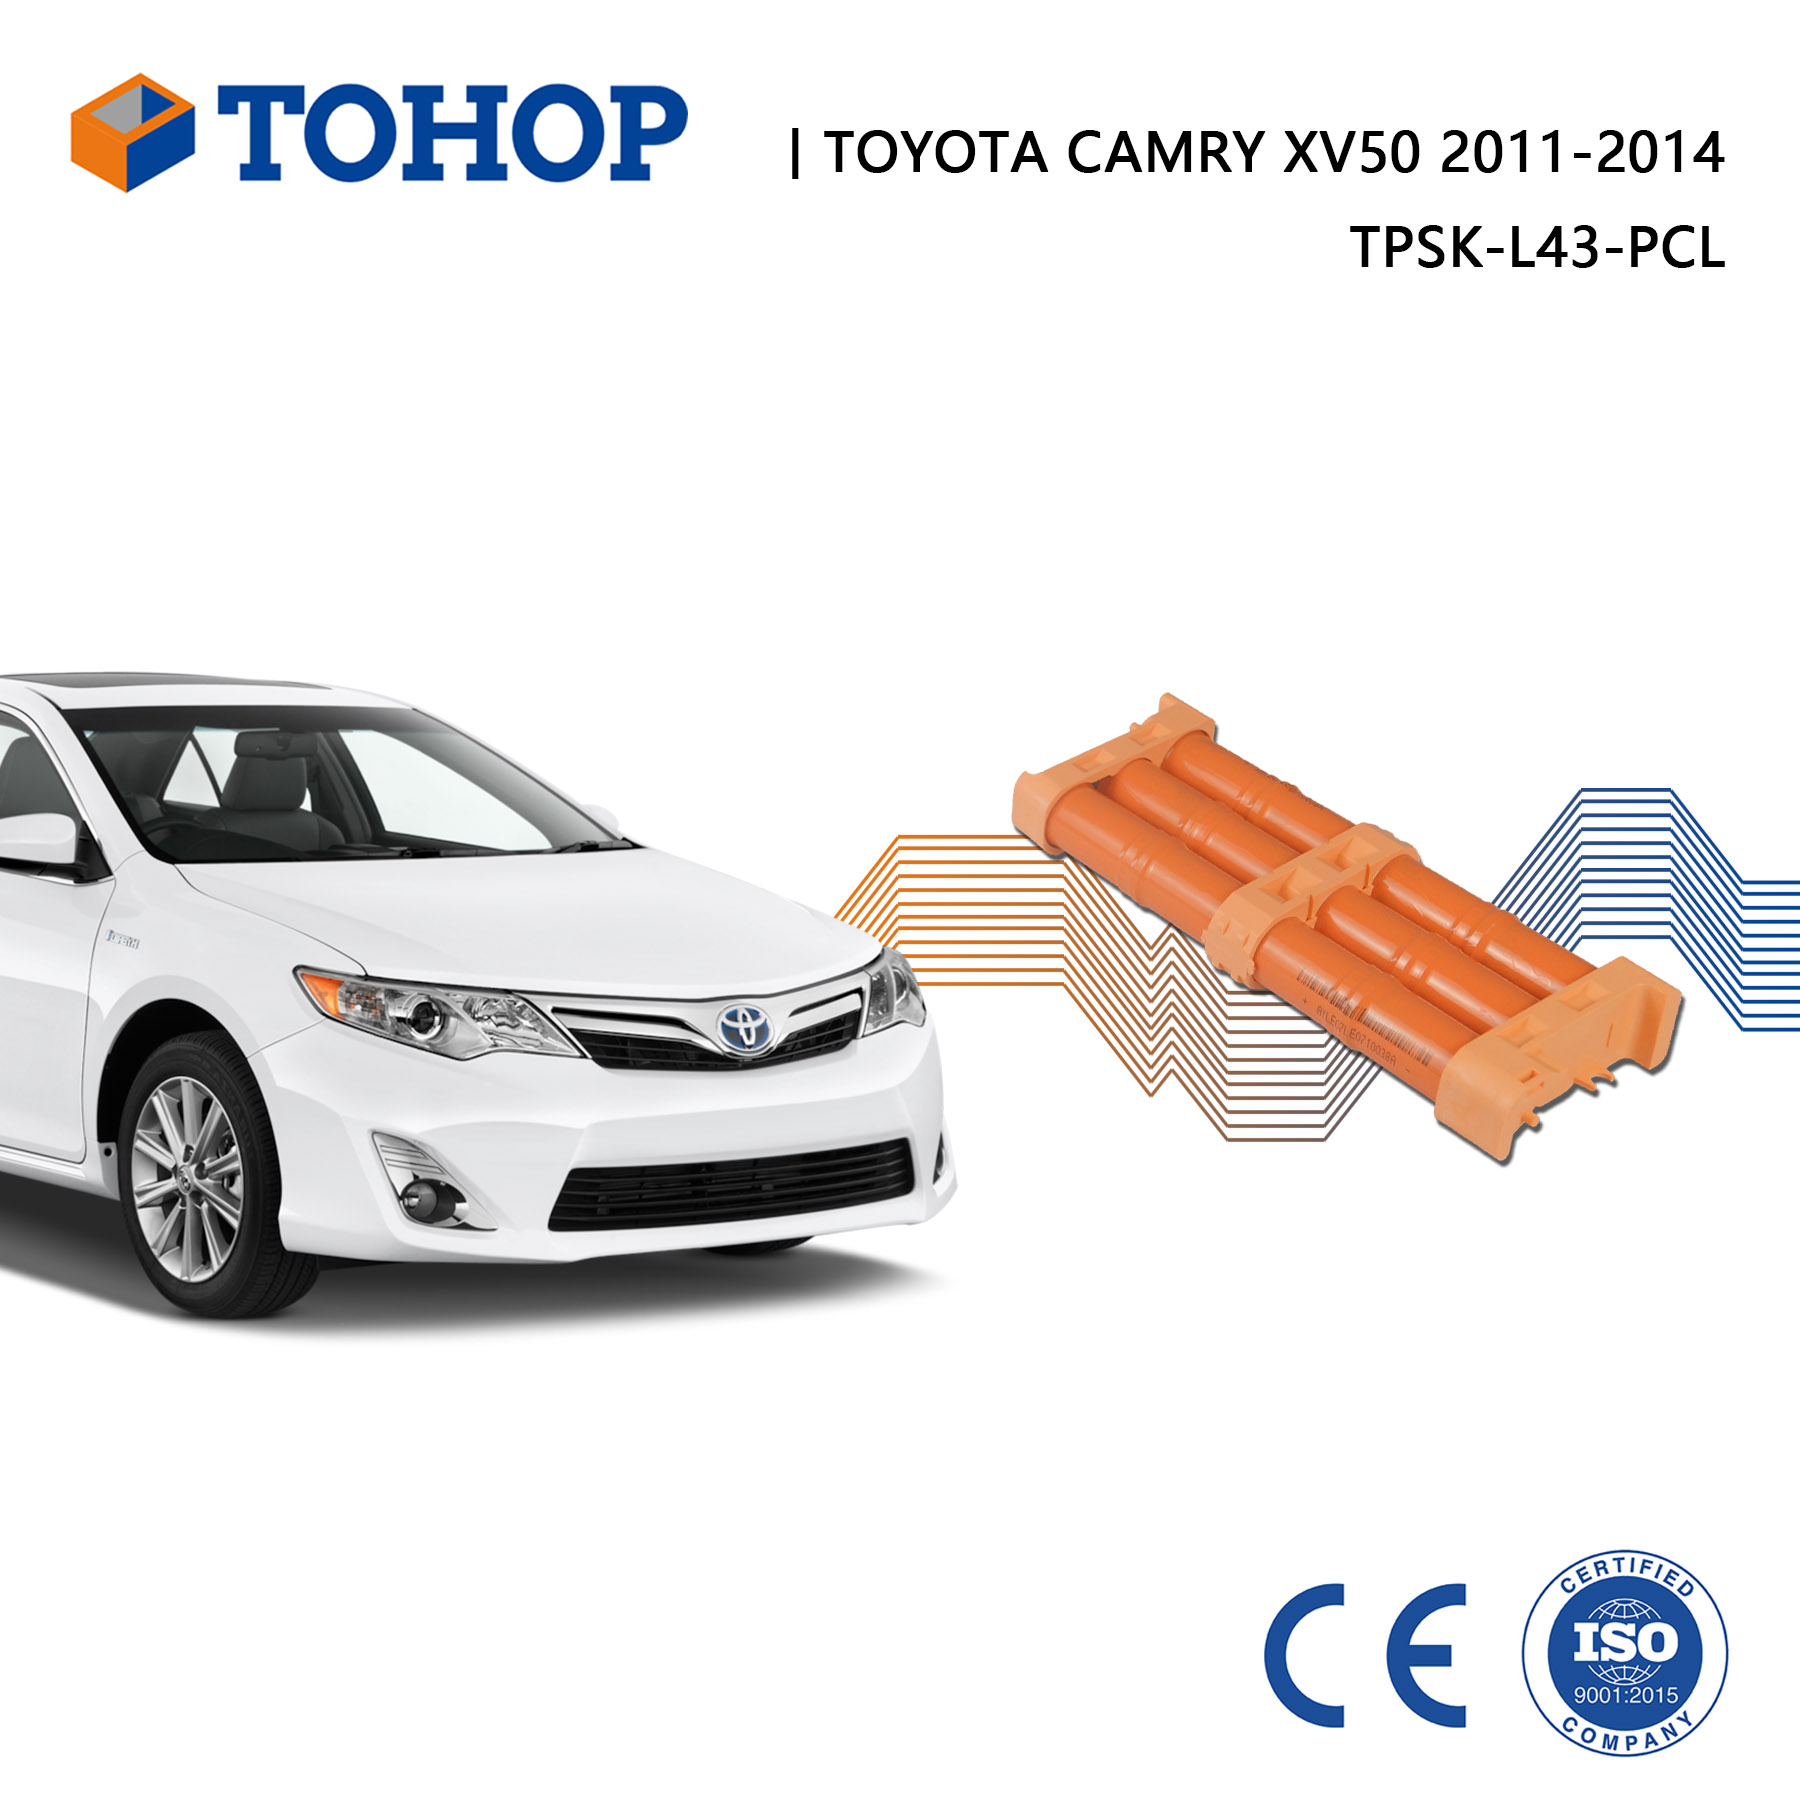 Remplacement de la batterie hybride Toyota Camry XV40 / XV50 2007-2016